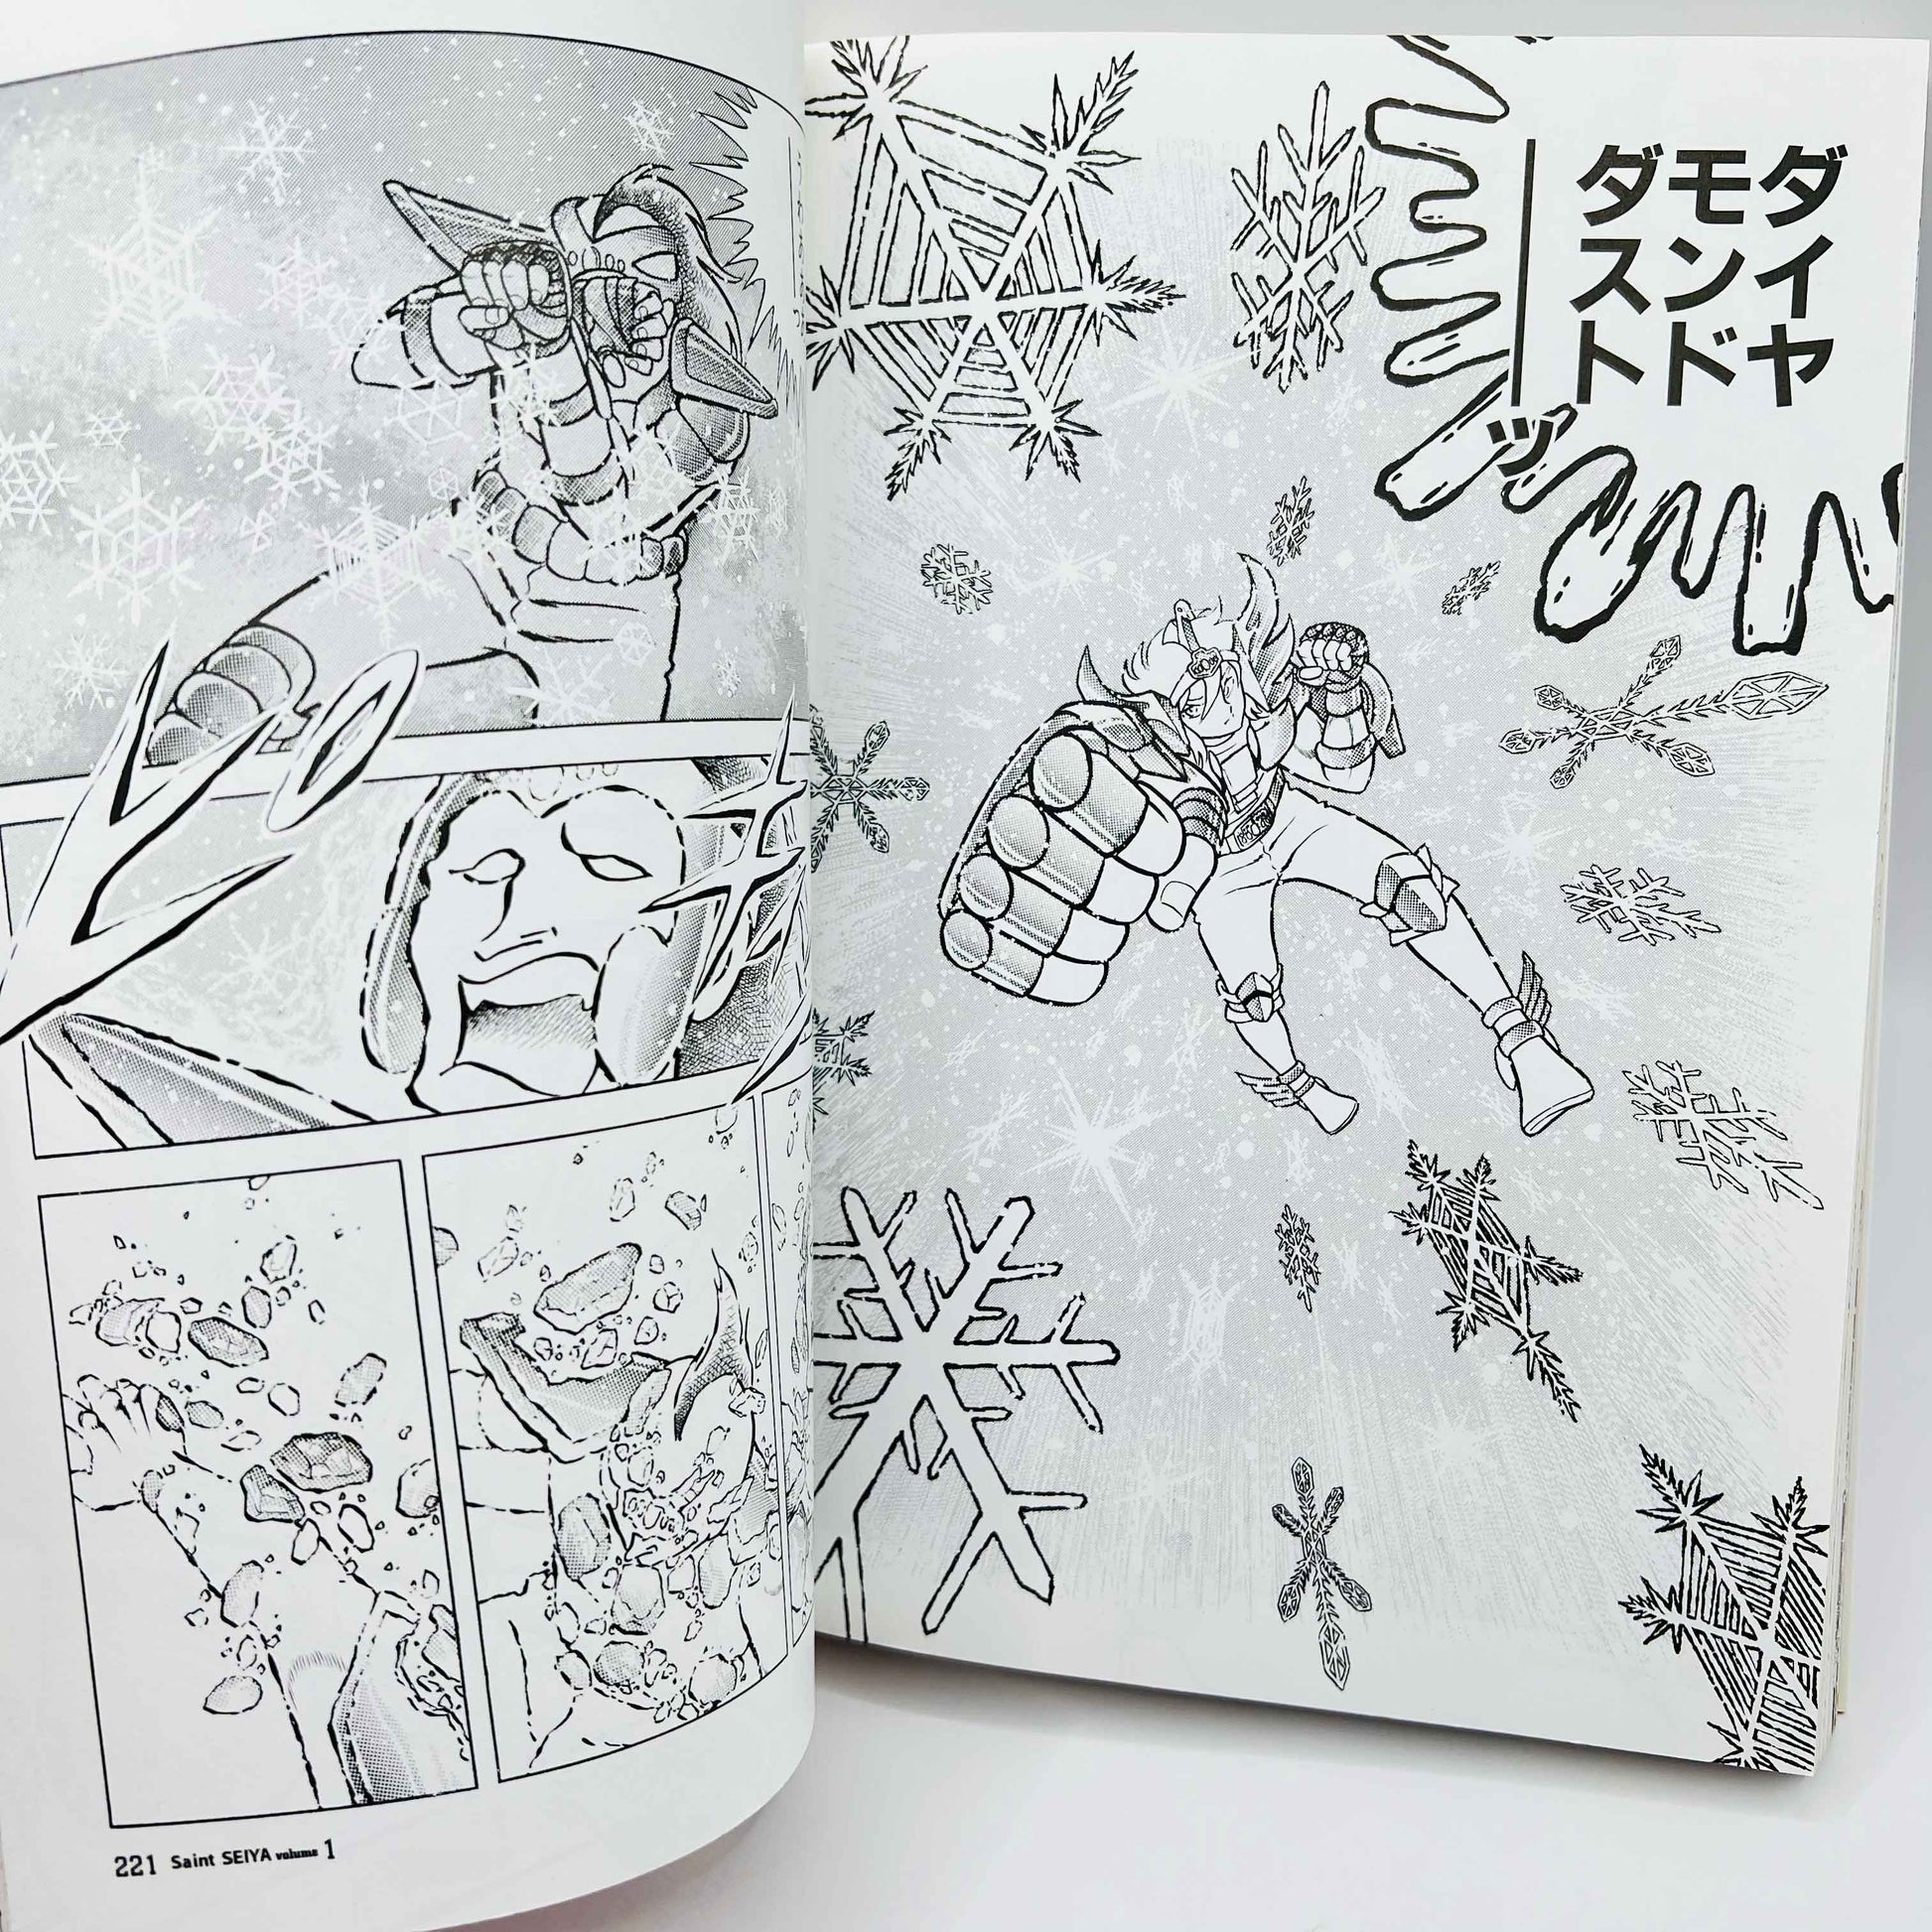 Saint Seiya (Kanzenban) - Volume 01 - 1stPrint.net - 1st First Print Edition Manga Store - M-SSKANZ-01-001